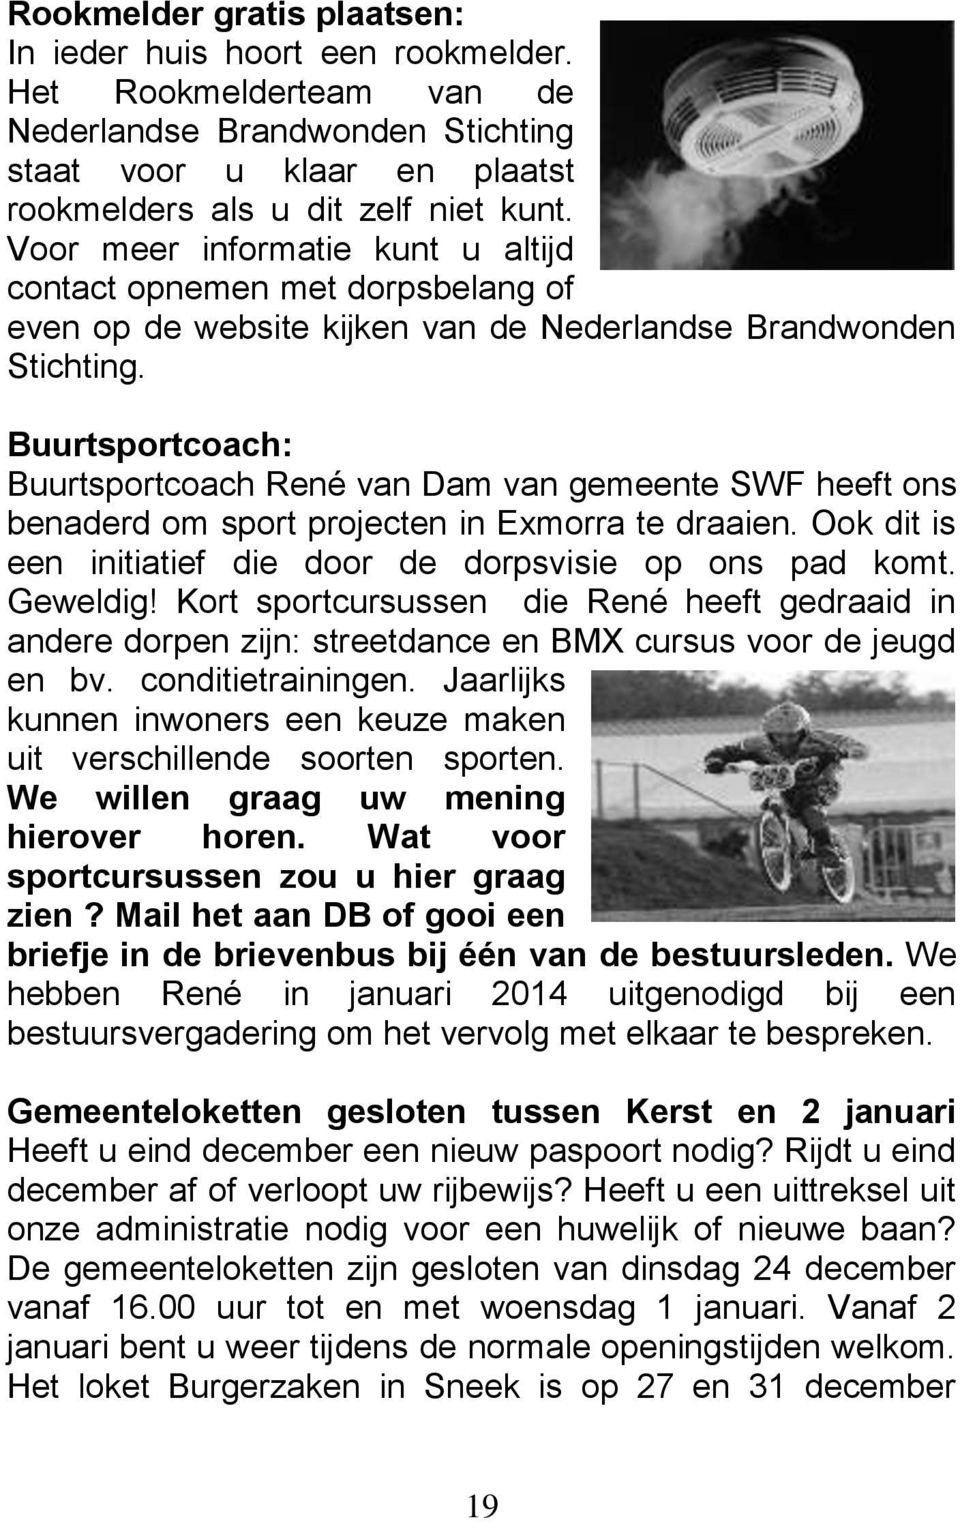 Buurtsportcoach: Buurtsportcoach René van Dam van gemeente SWF heeft ons benaderd om sport projecten in Exmorra te draaien. Ook dit is een initiatief die door de dorpsvisie op ons pad komt. Geweldig!